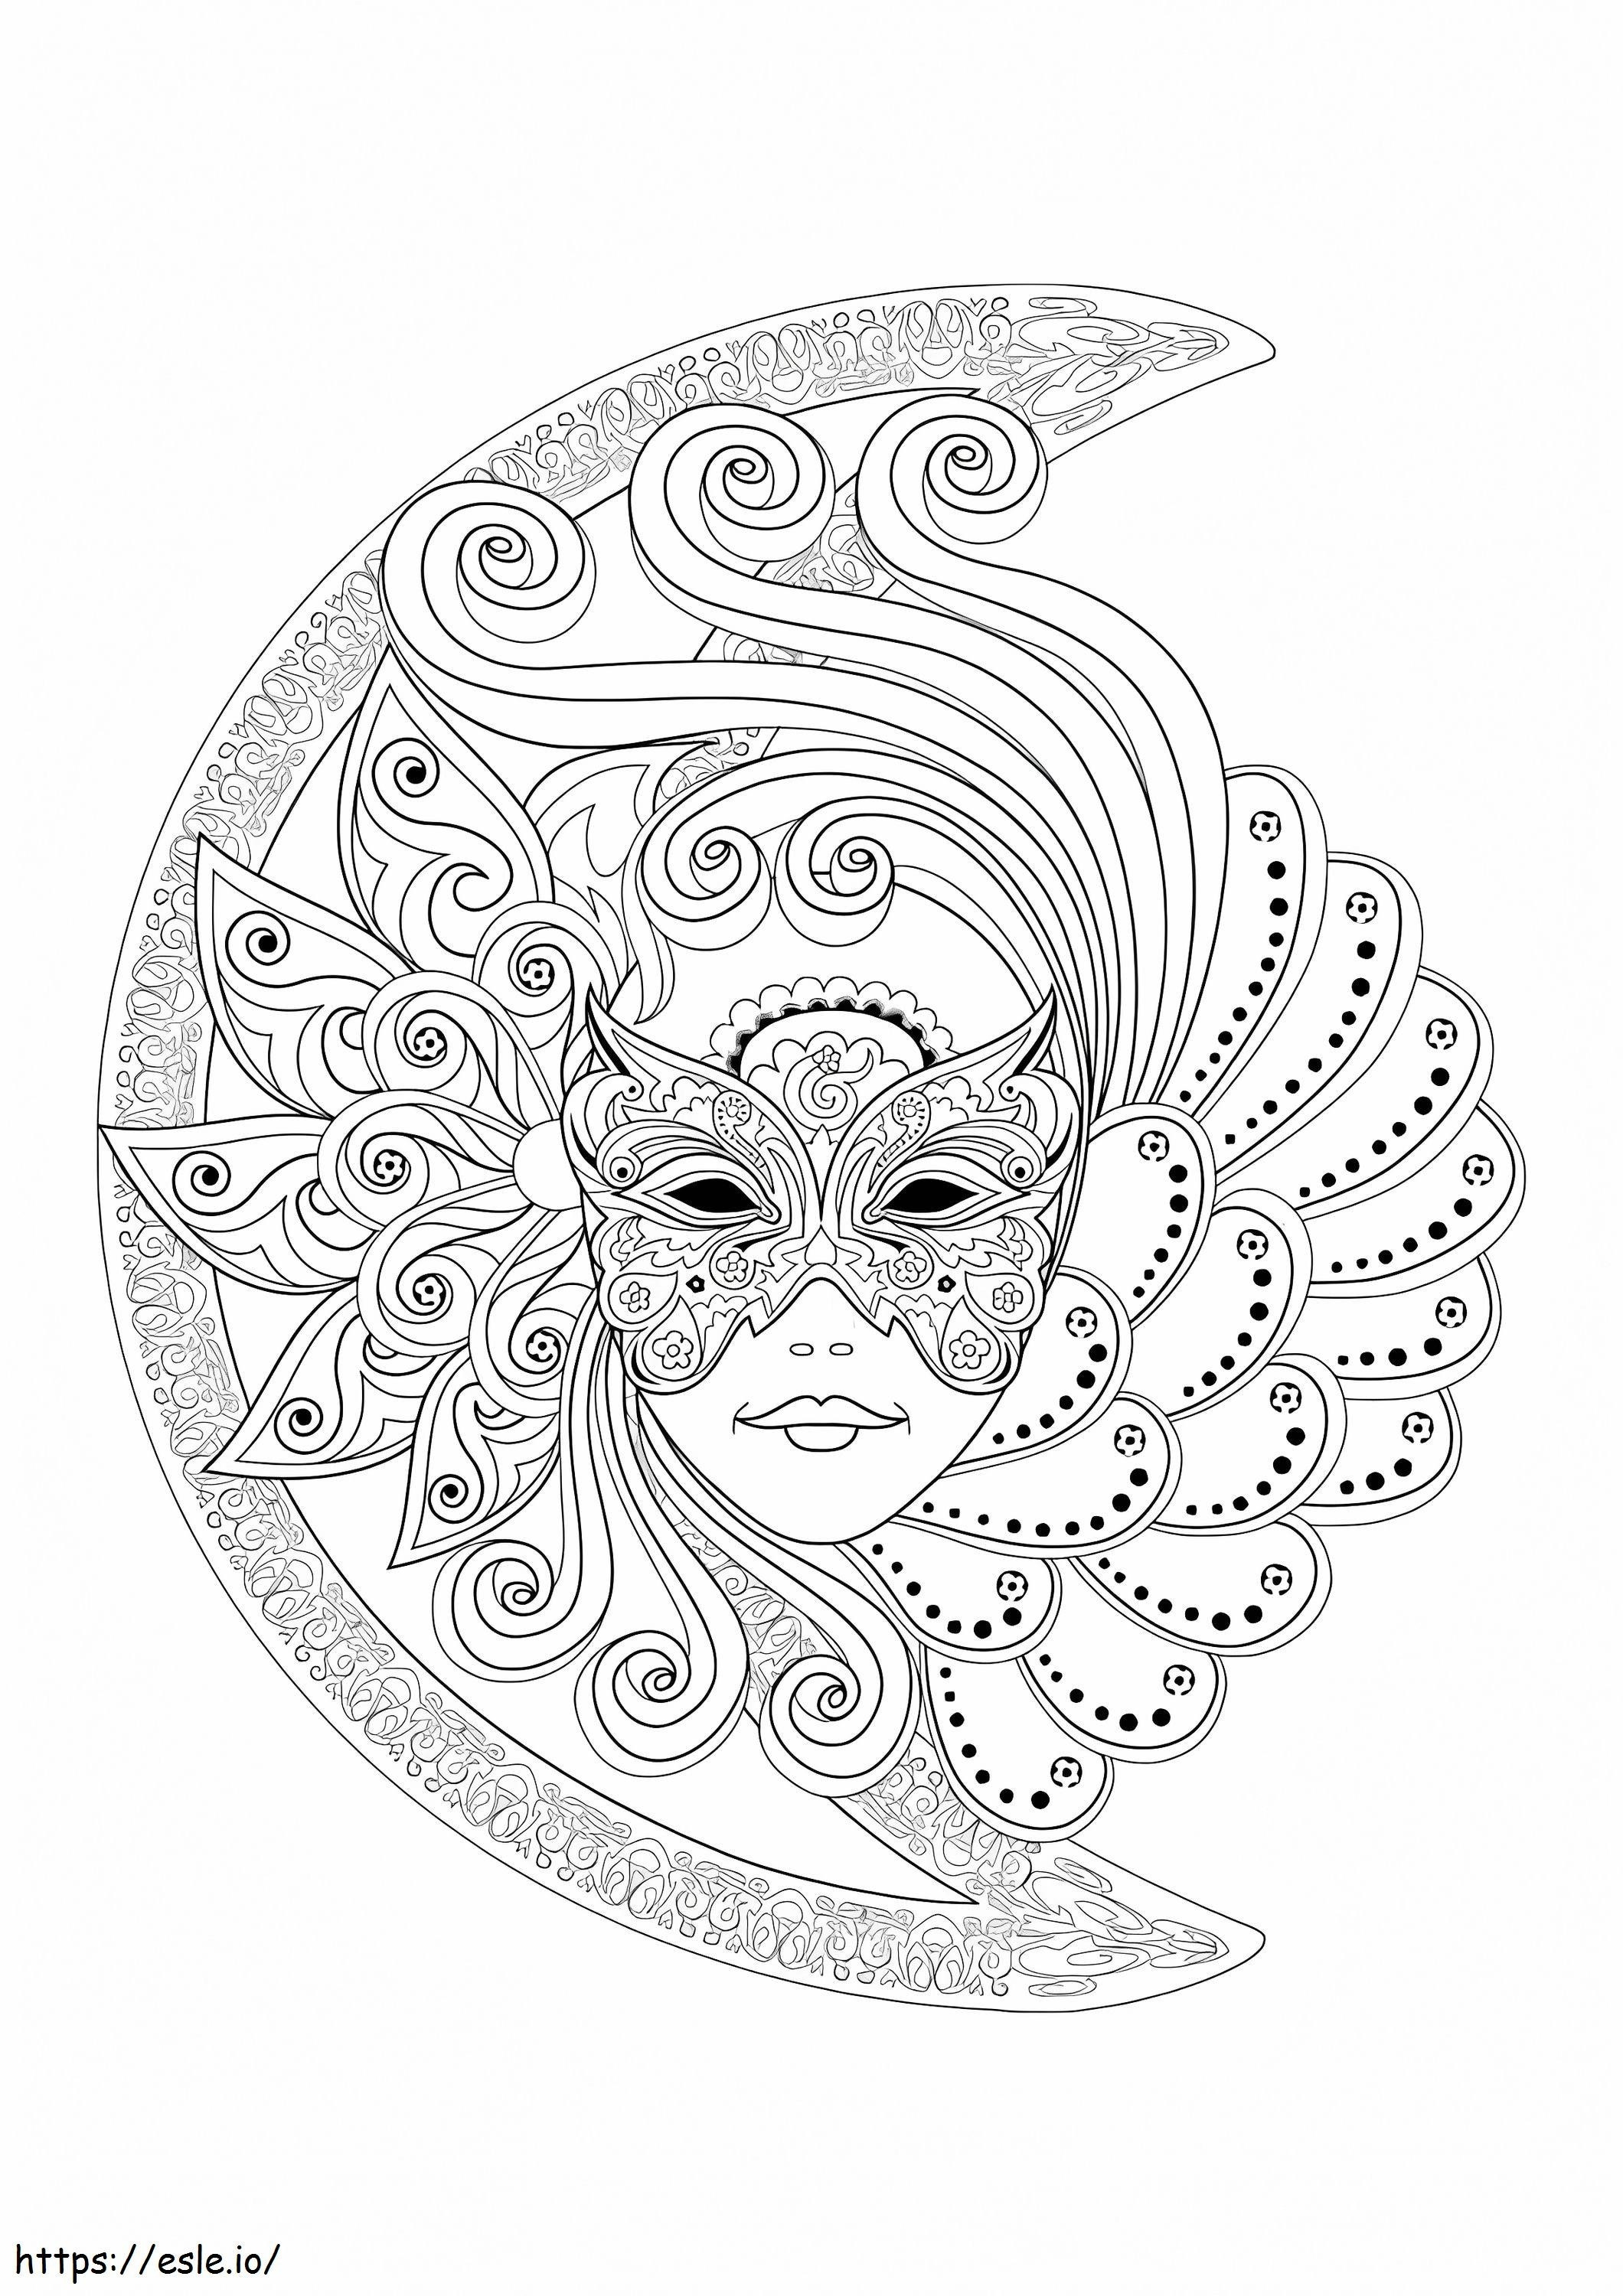 Rostro de mujer con máscara de carnaval para colorear